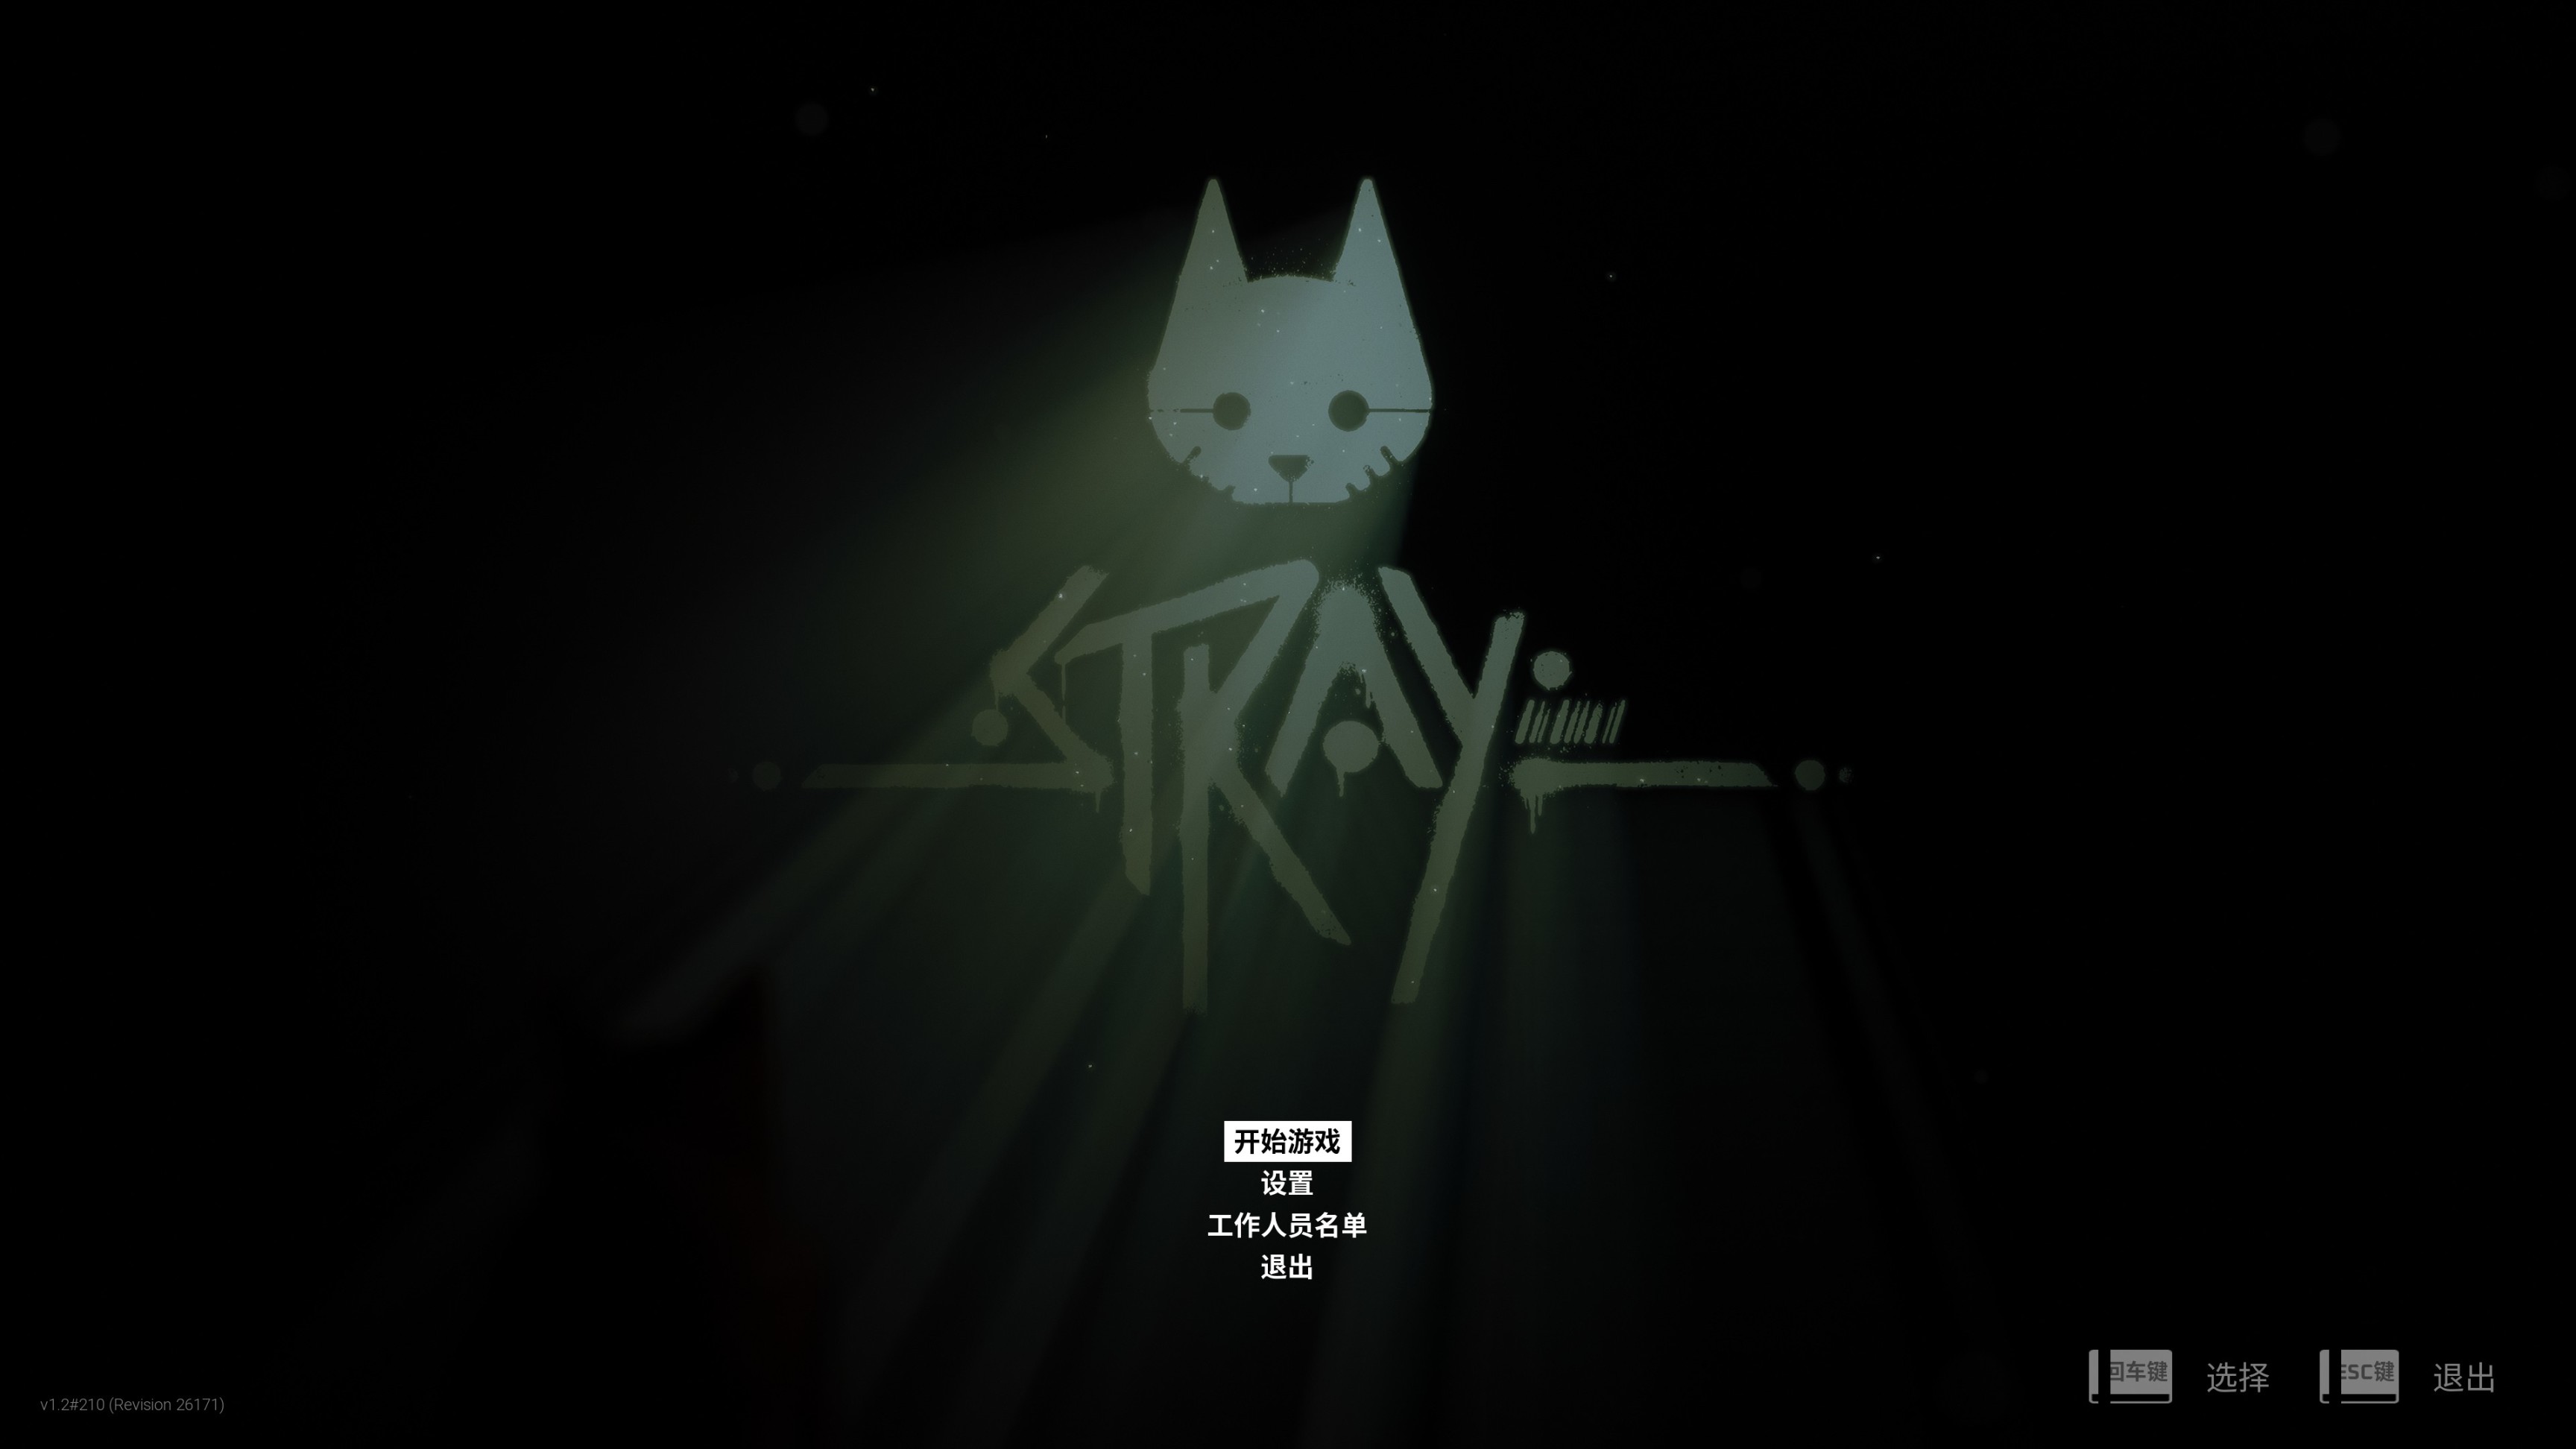 【PC遊戲】Stray 評測.. 貓貓要把我融化了( ˙-˙ )-第9張